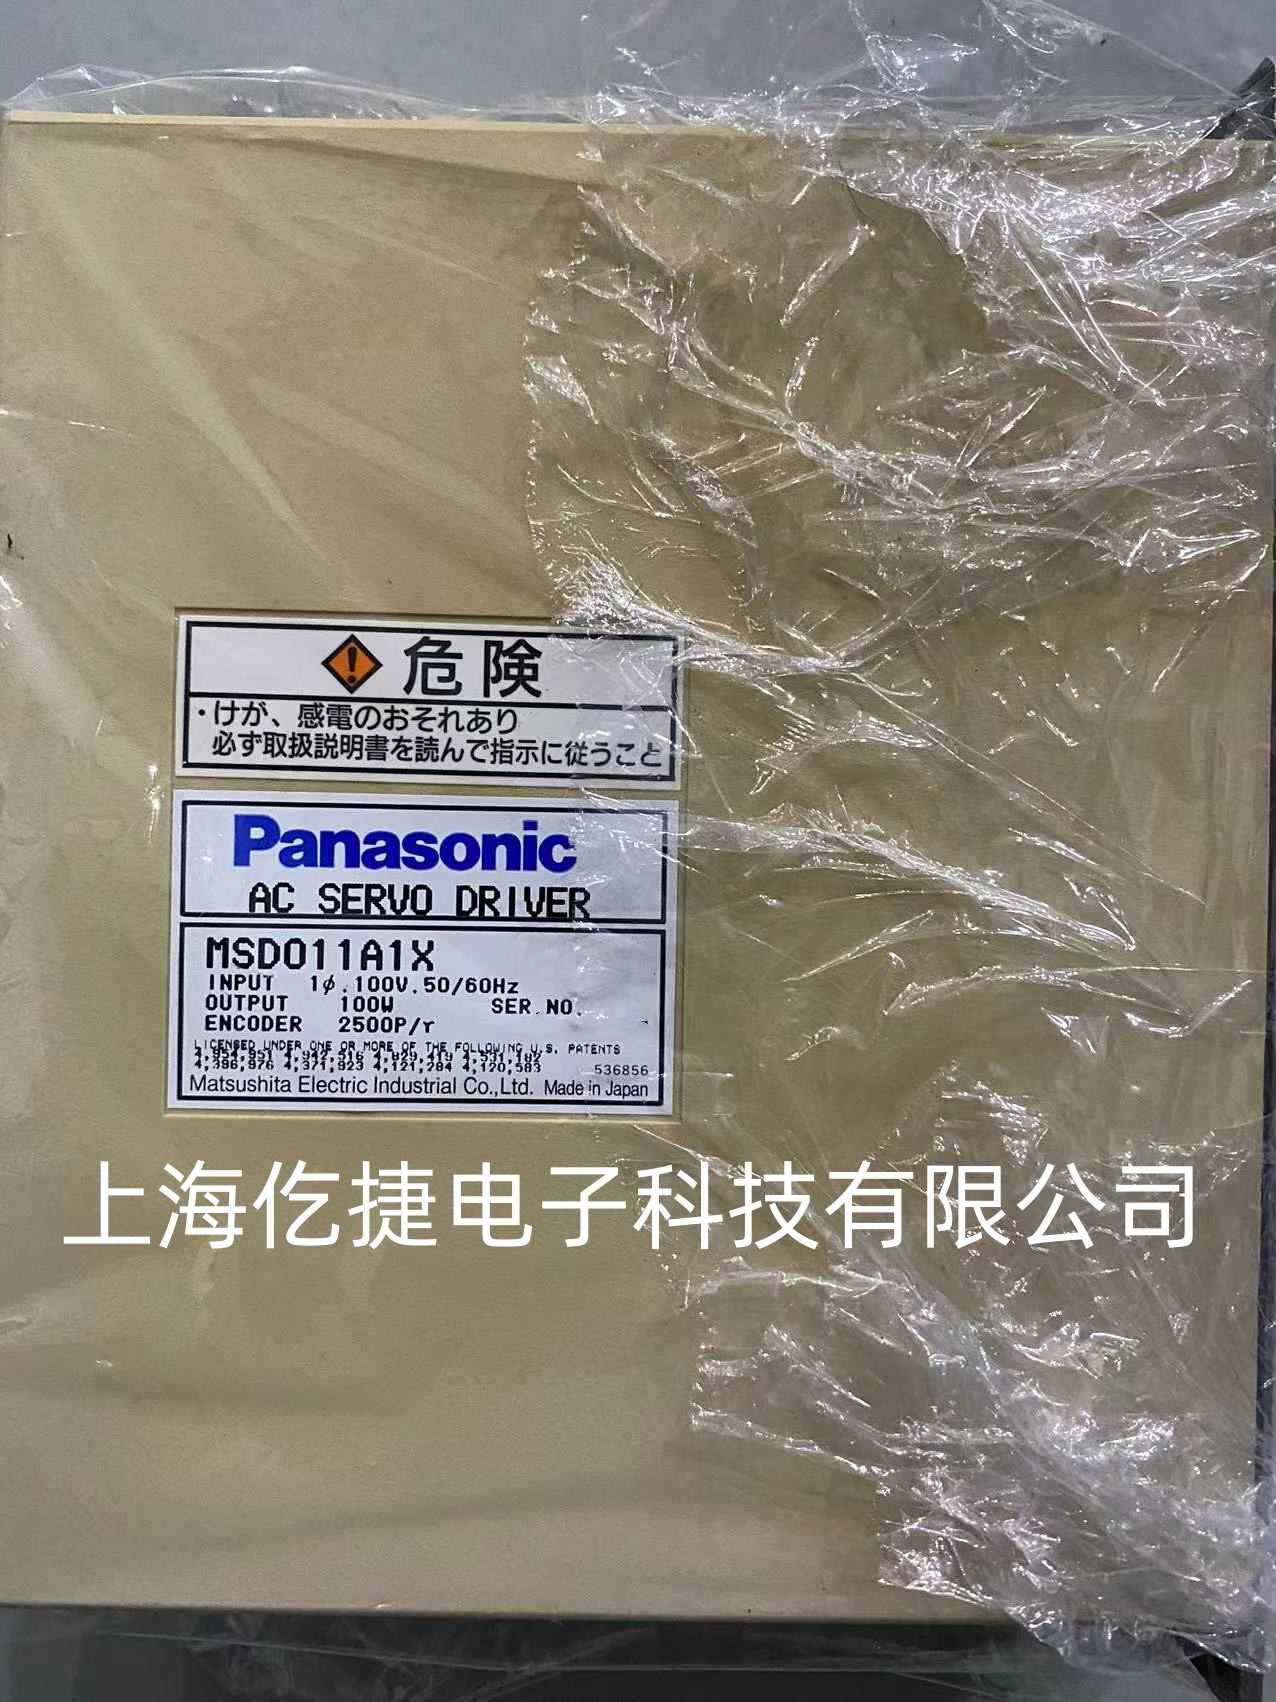 Panasonic松下伺服驱动器维修 MSD011A1XX21驱动器维修